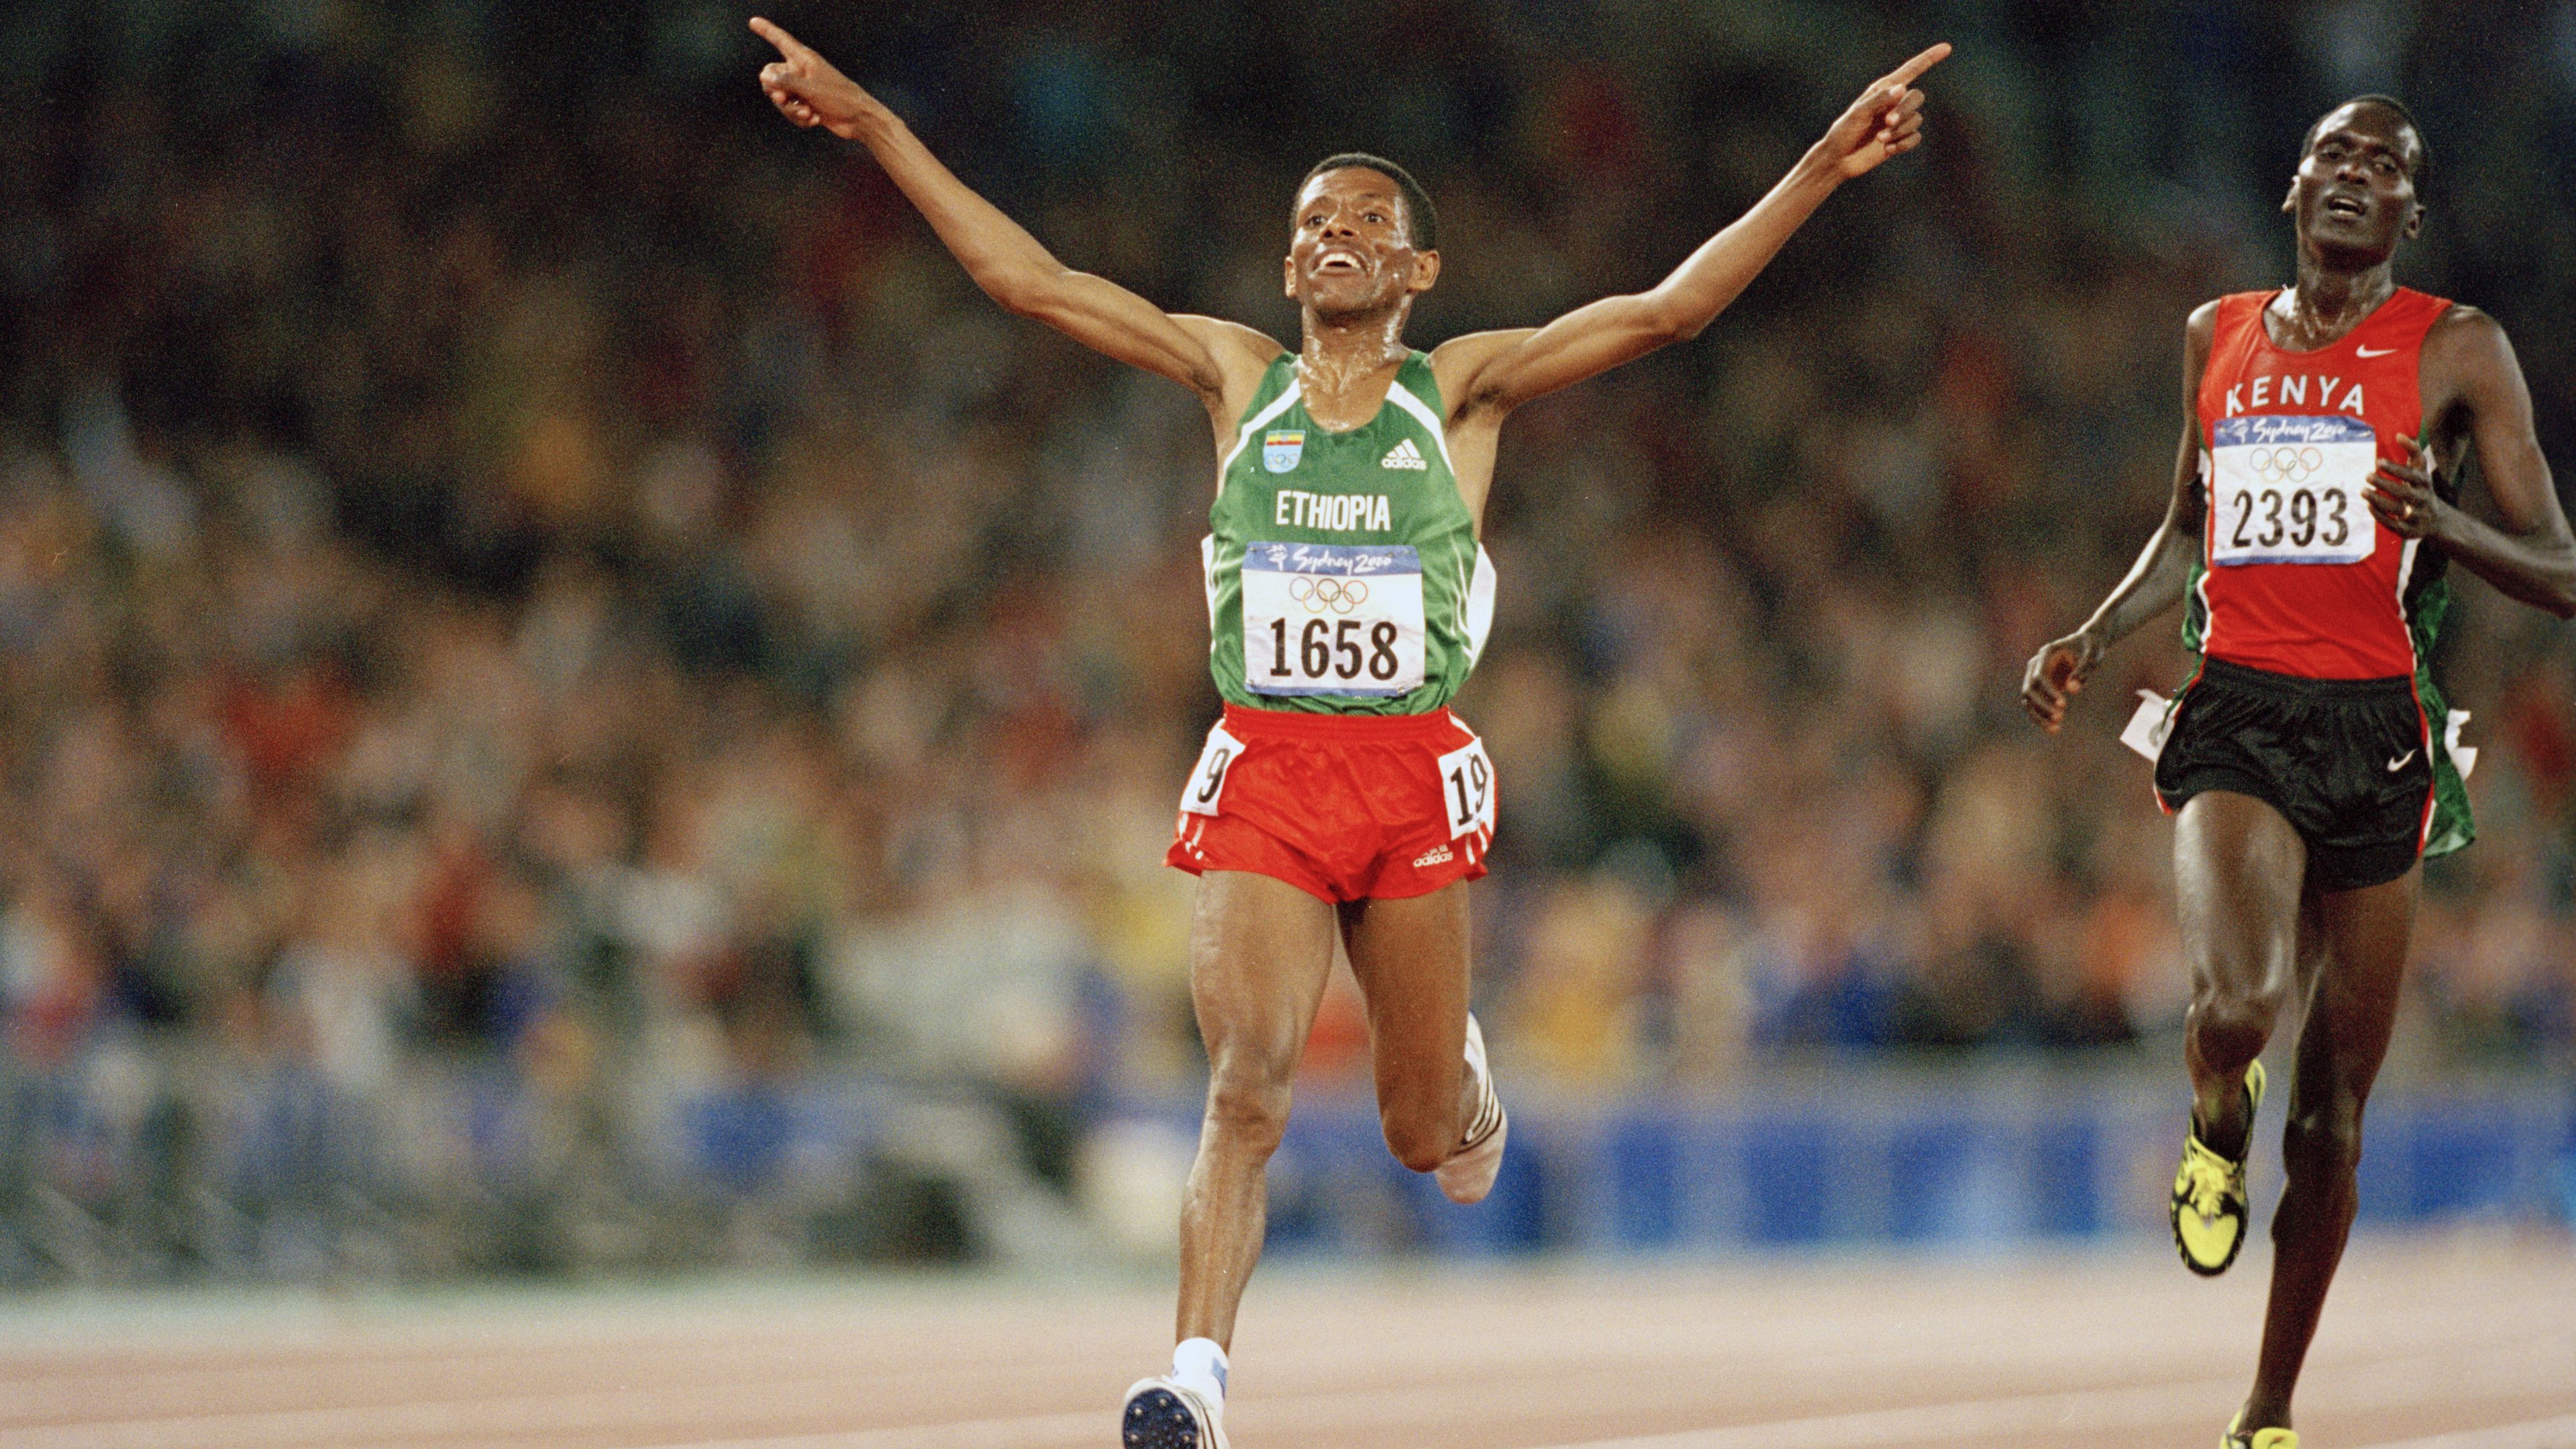 1996 és 2000 között két-két olimpia és vb hozta ugyanazt az eredményt: Gebre a kenyai Paul Tergat előtt lett aranyérmes (Fotó: Getty Images)